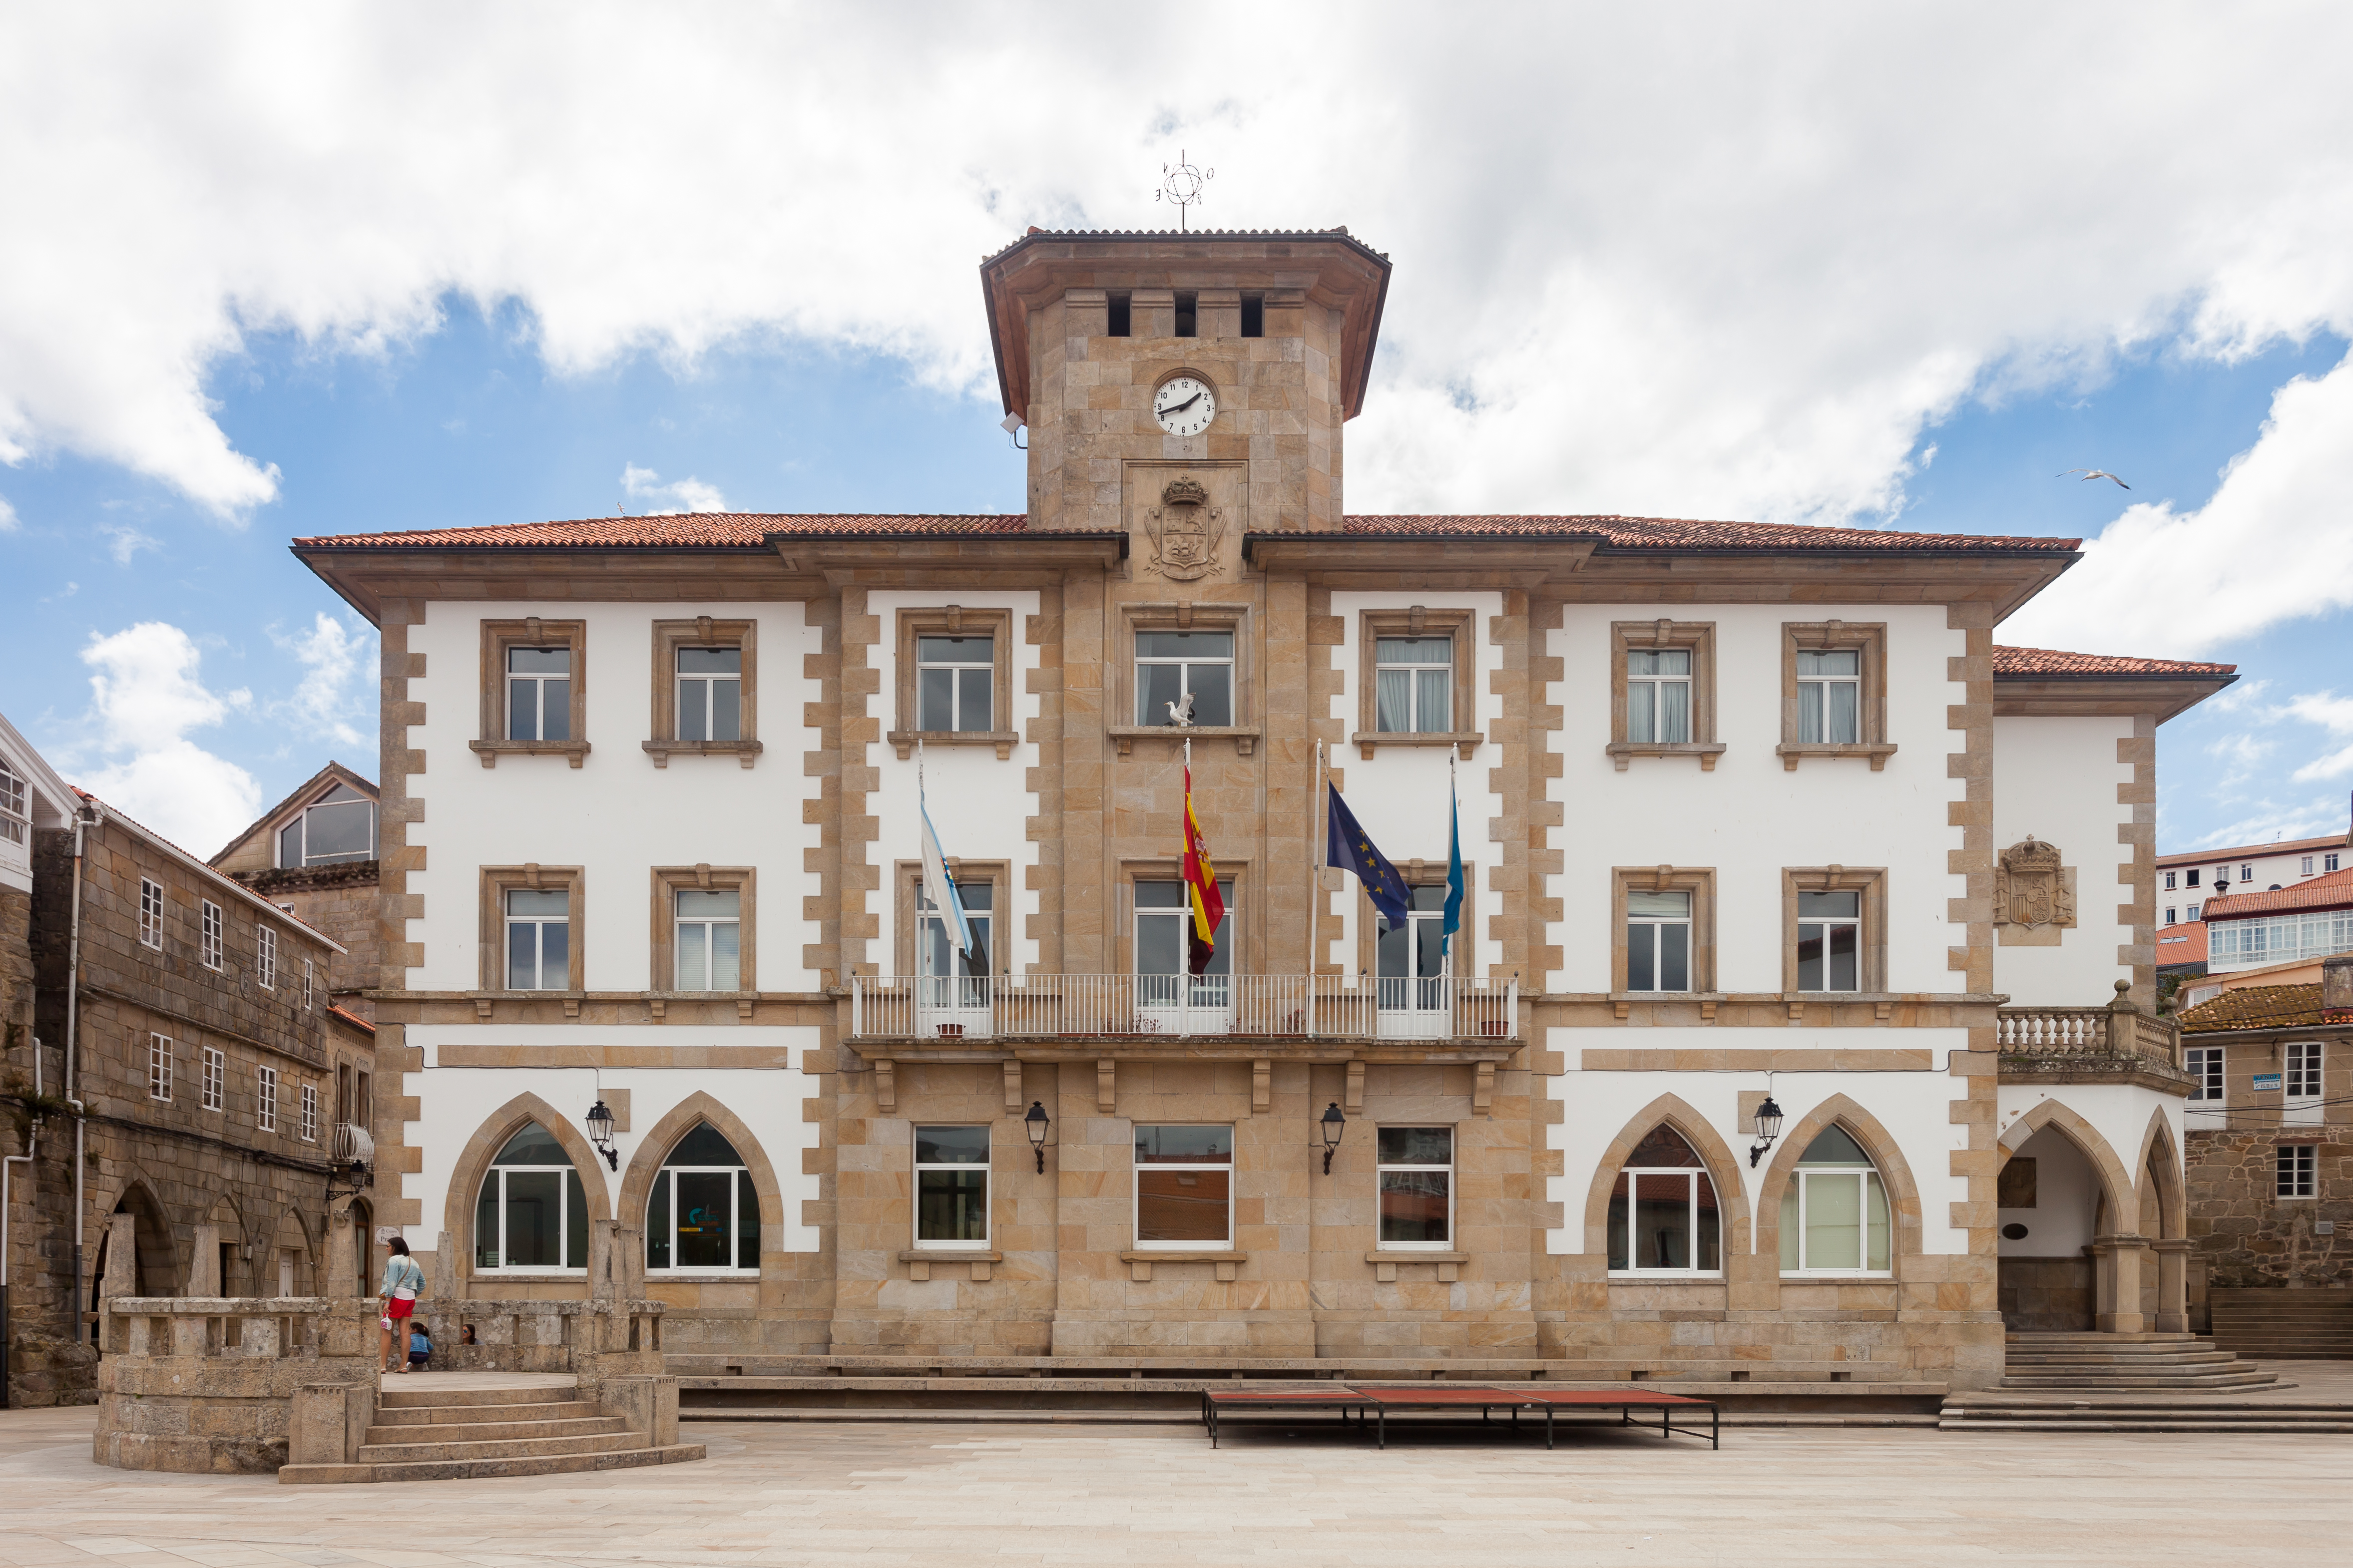 2015. Casa do concello de Muros. Galiza MU24